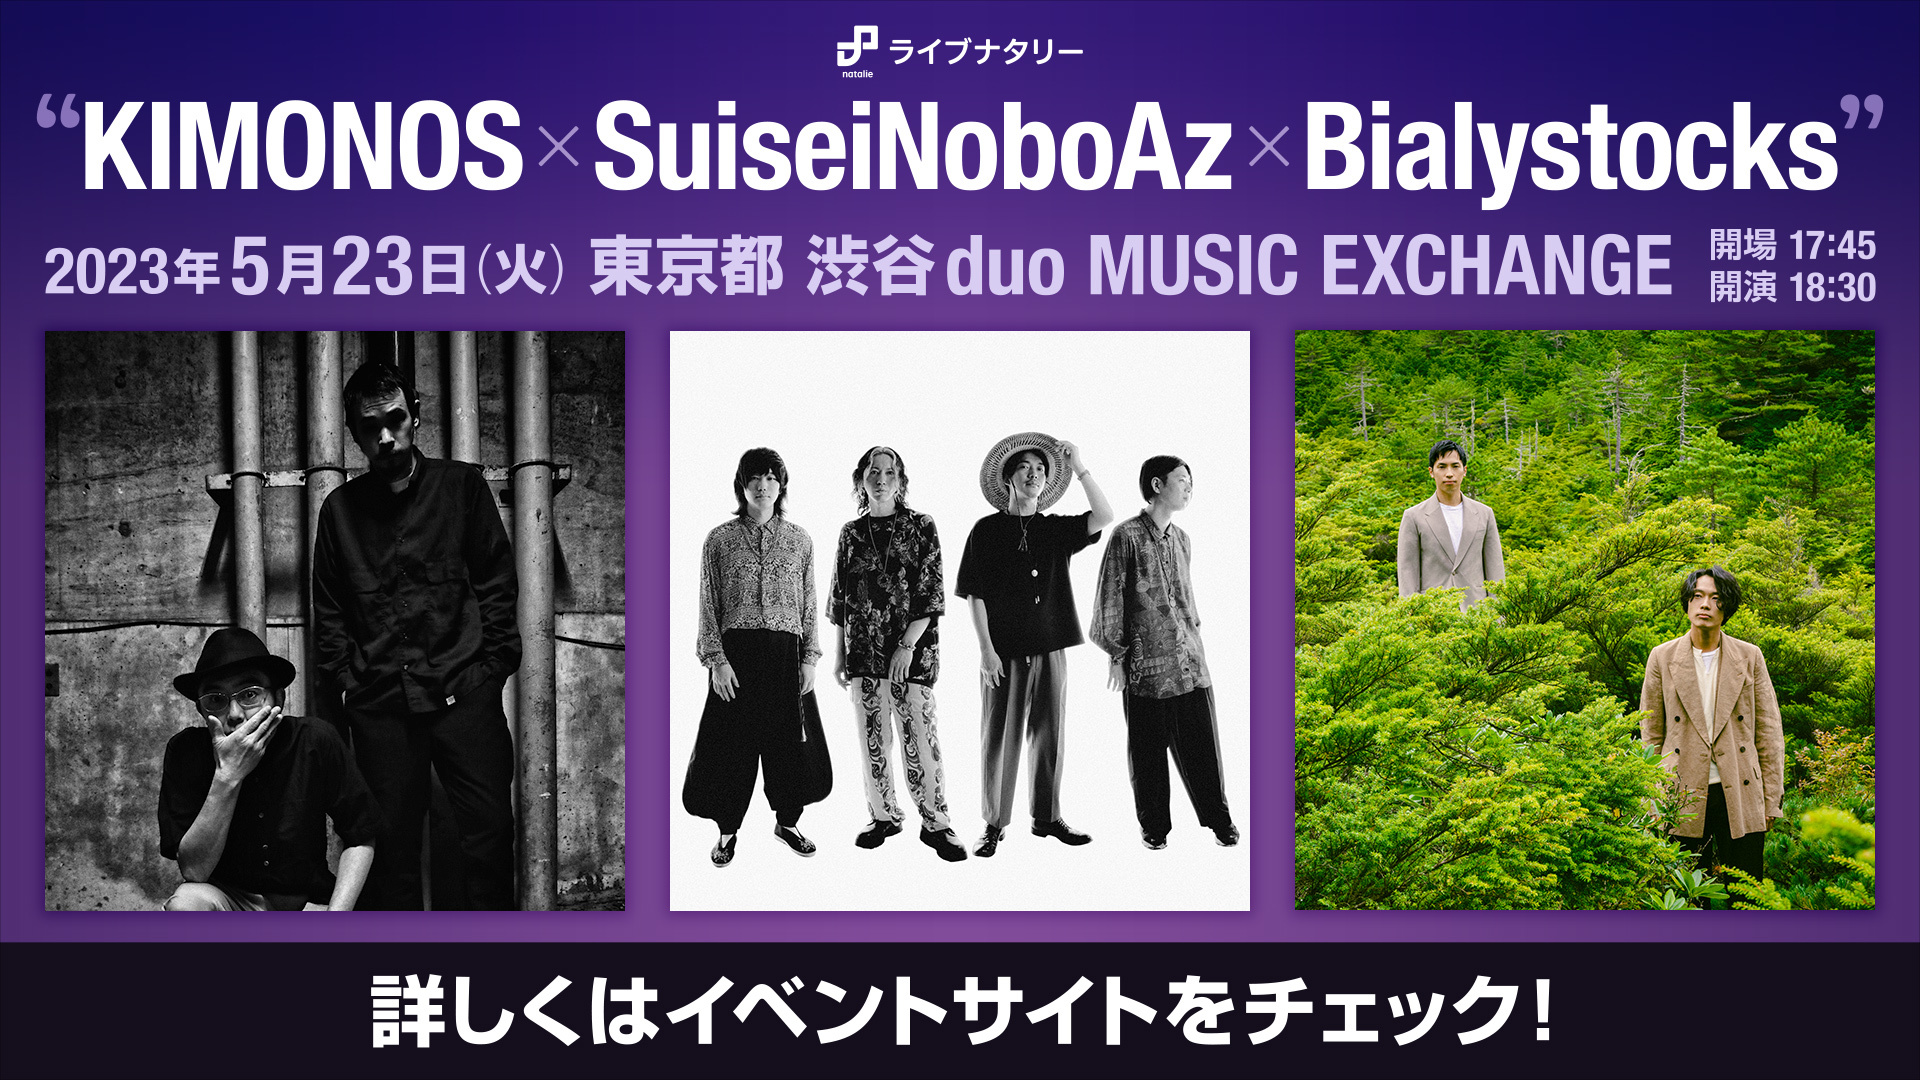 ライブナタリー “KIMONOS × SuiseiNoboAz × Bialystocks”